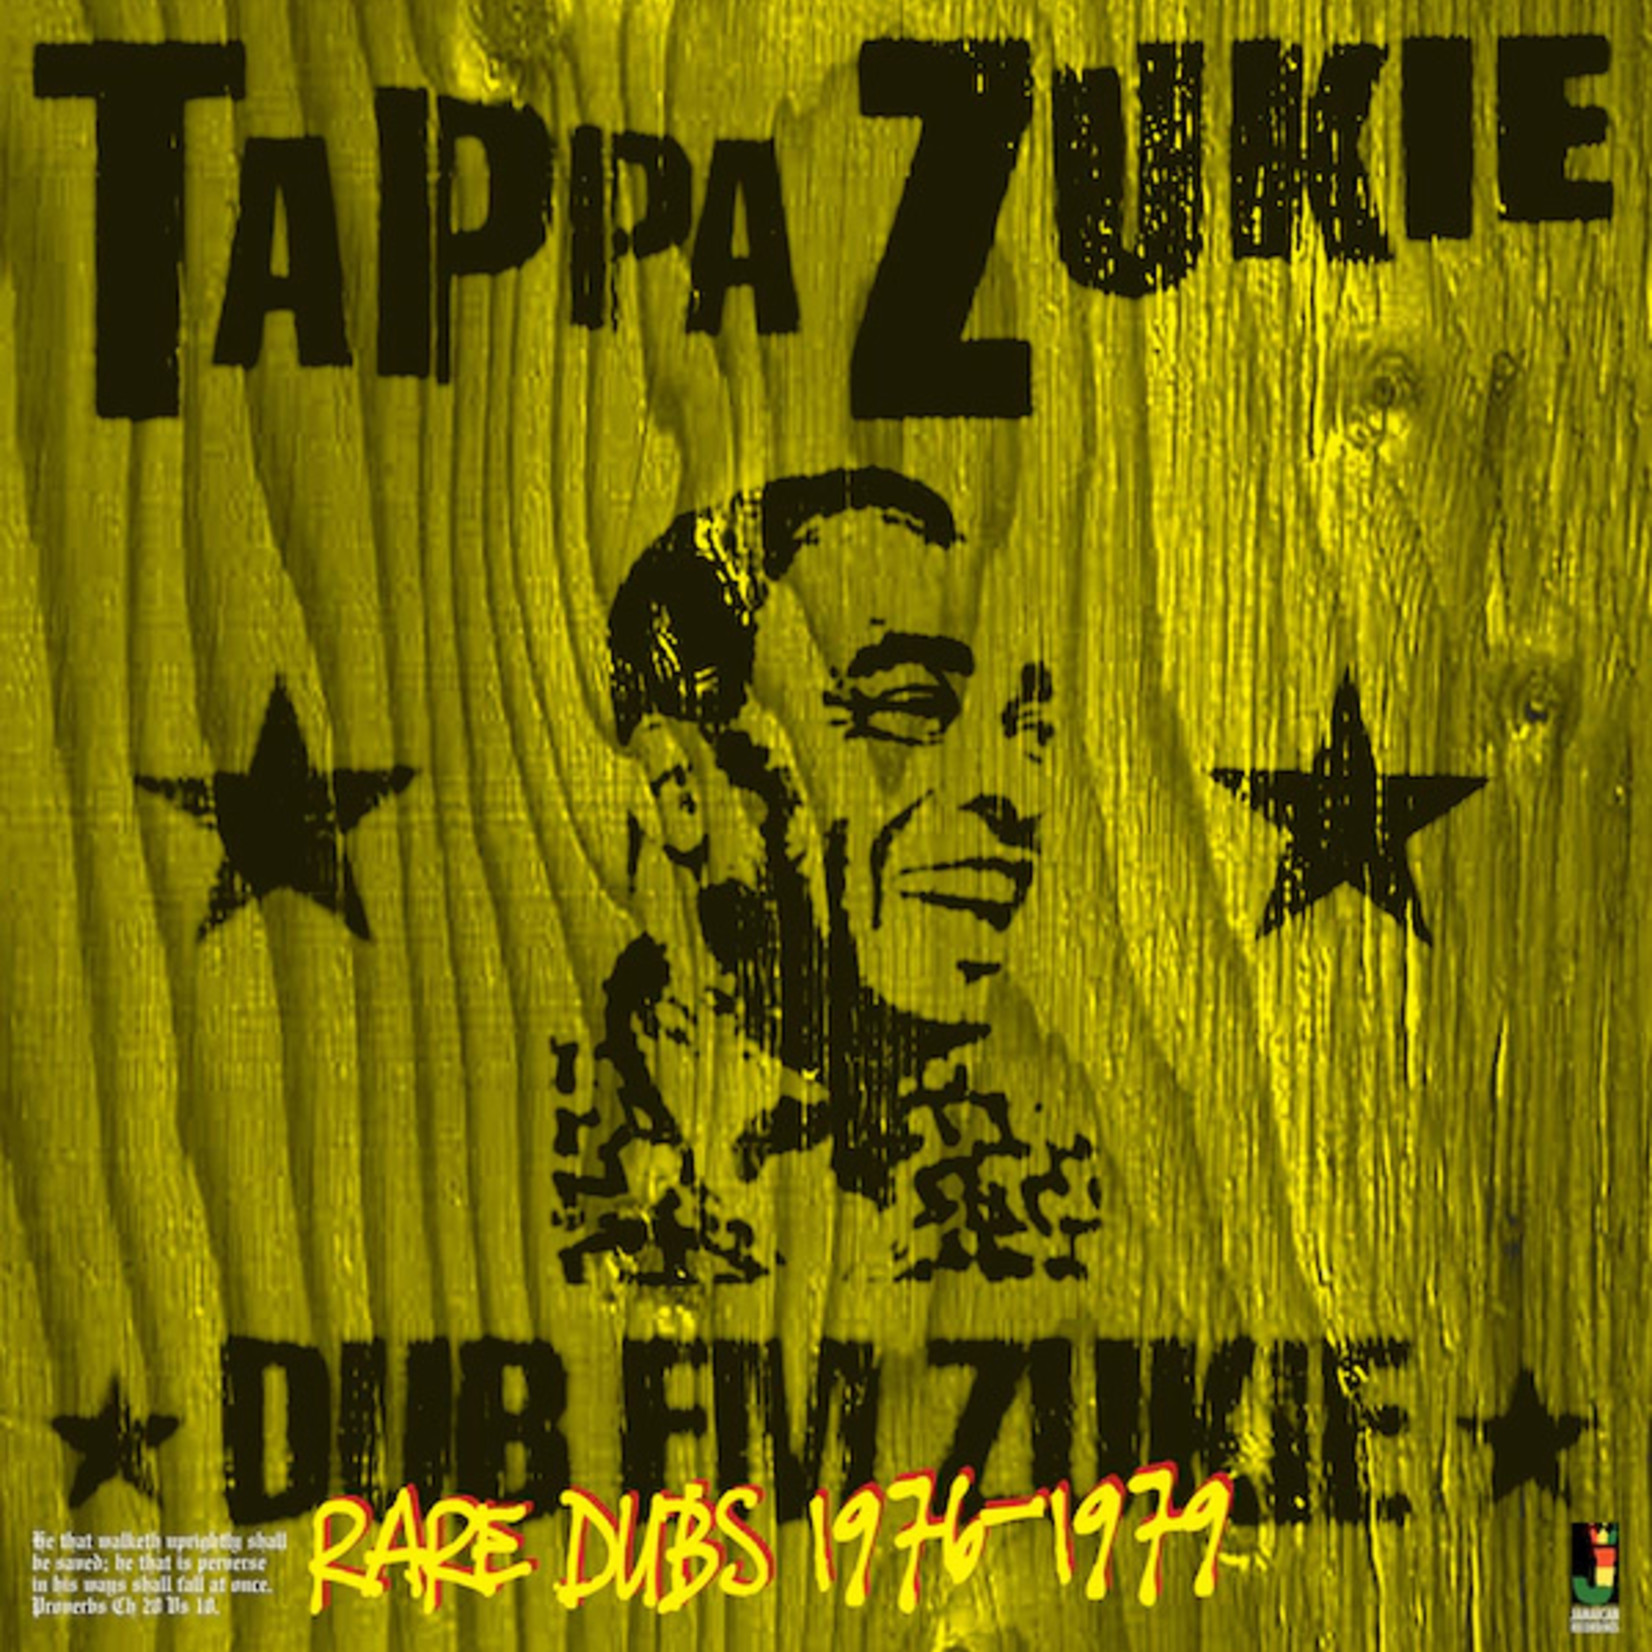 Tappa Zukie – Dub Em Zukie - Rare Dubs 1976-1979